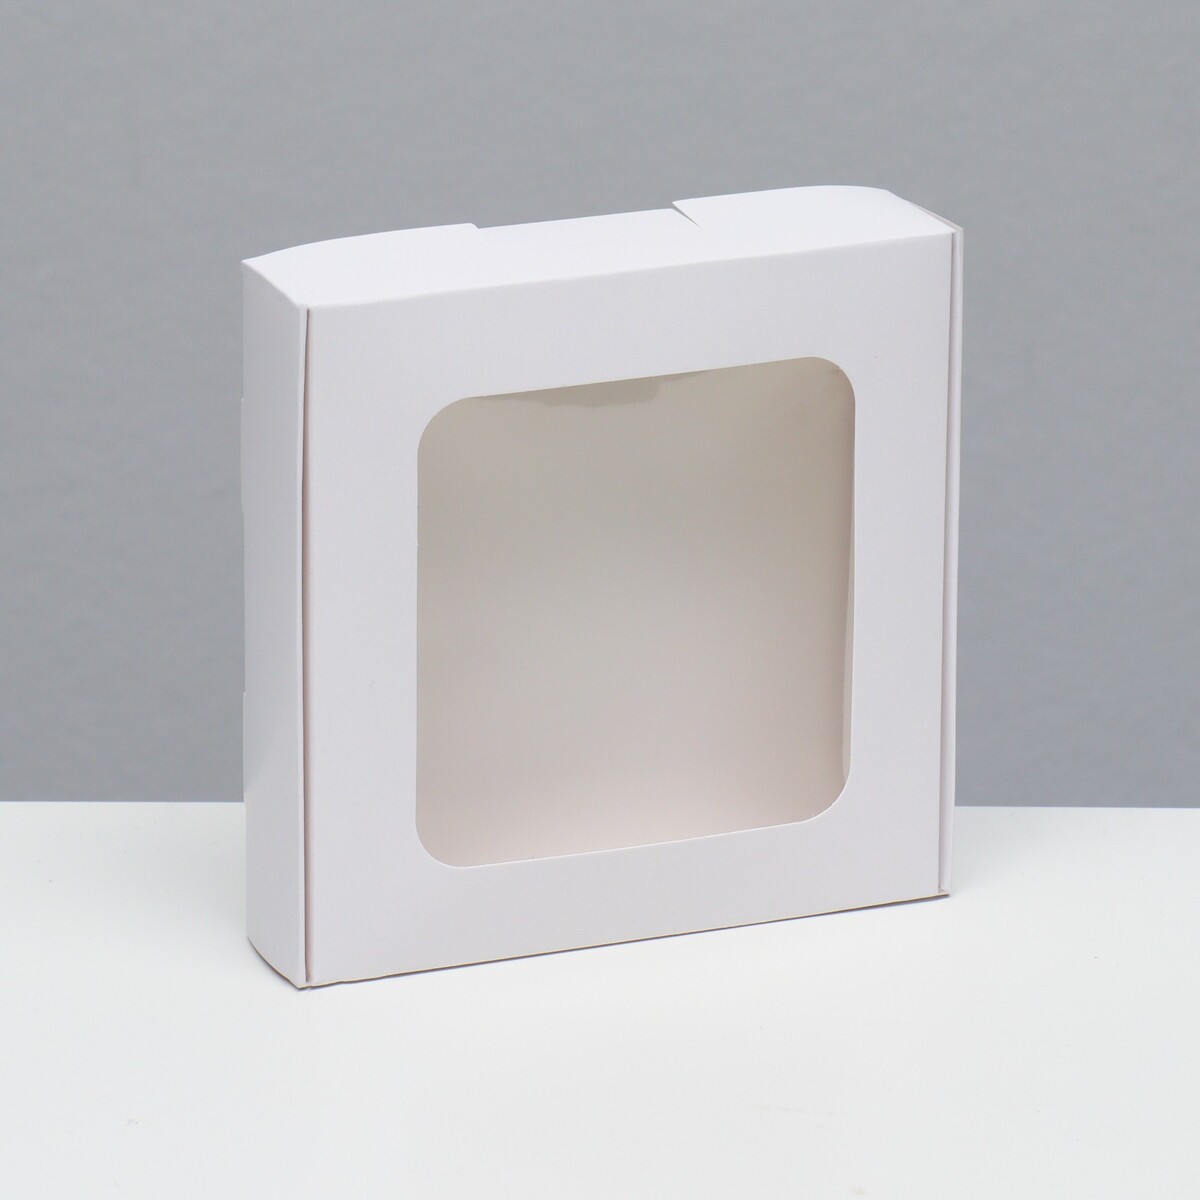 Коробка самосборная, белая, 13 х 13 х 3 см коробка самосборная белая 21 х 21 х 3 см